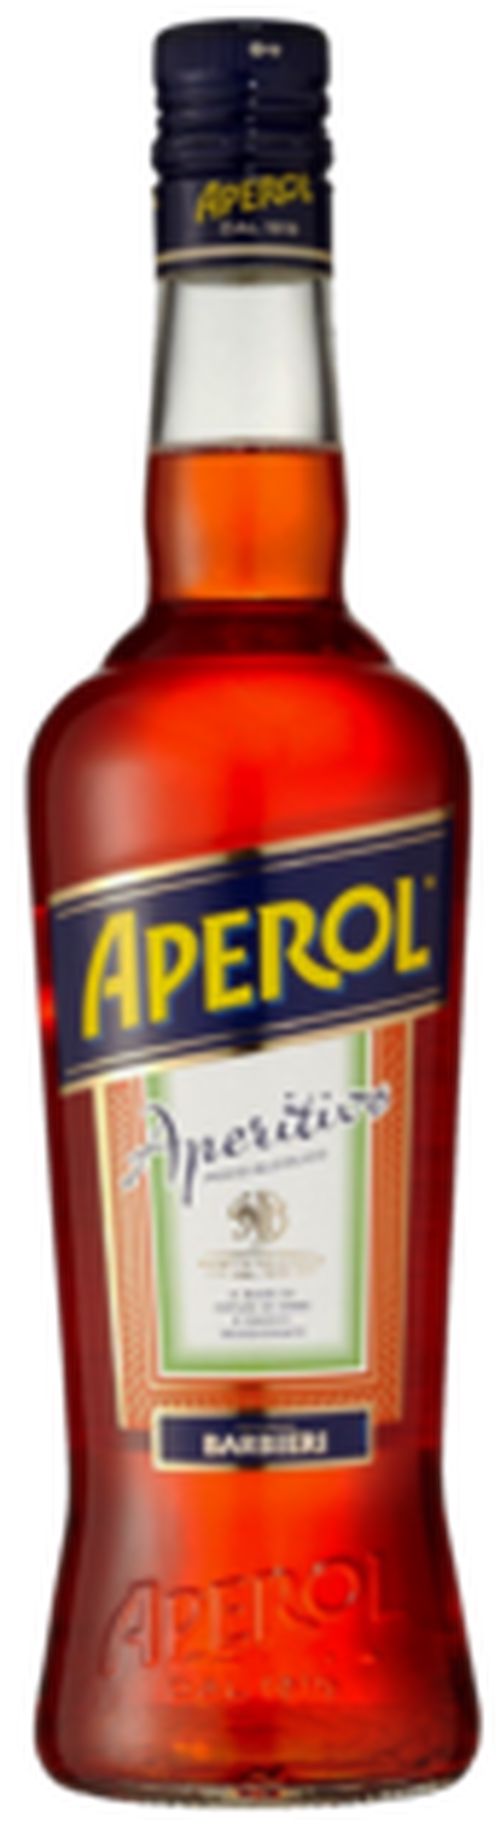 Aperol 11% 1L